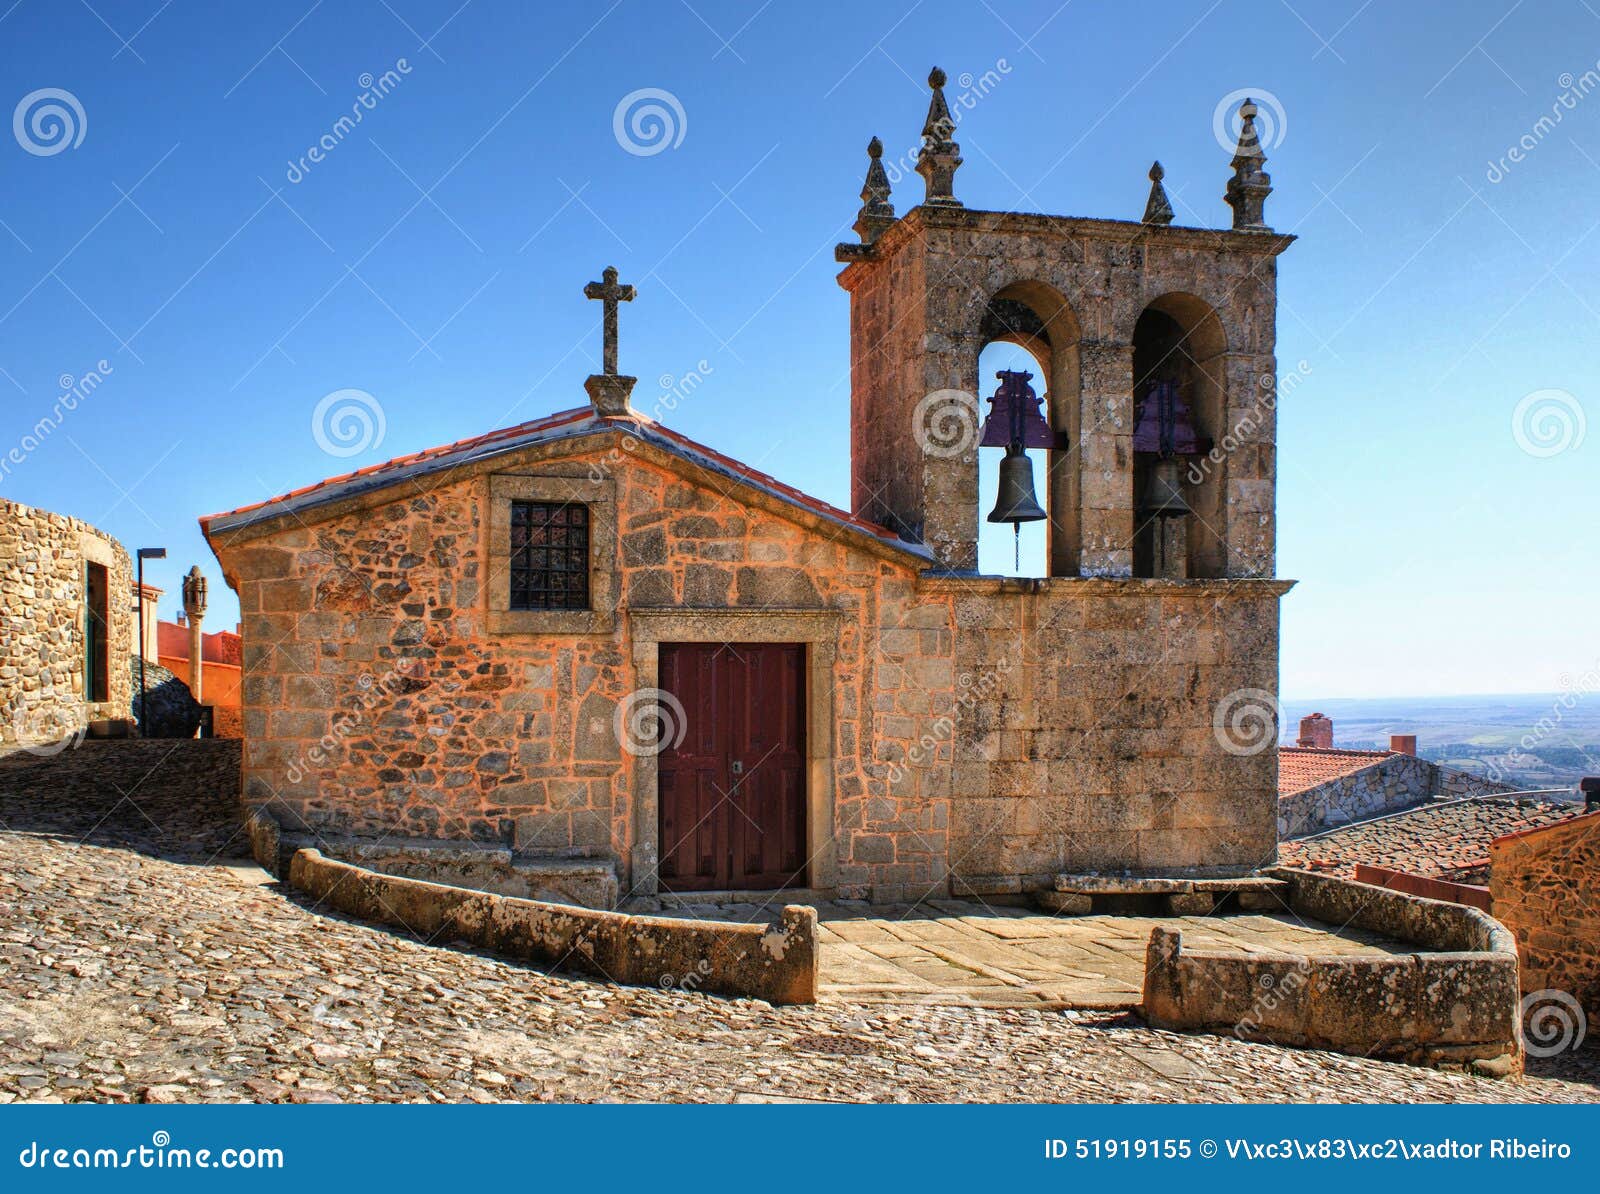 rocamador church in castelo rodrigo